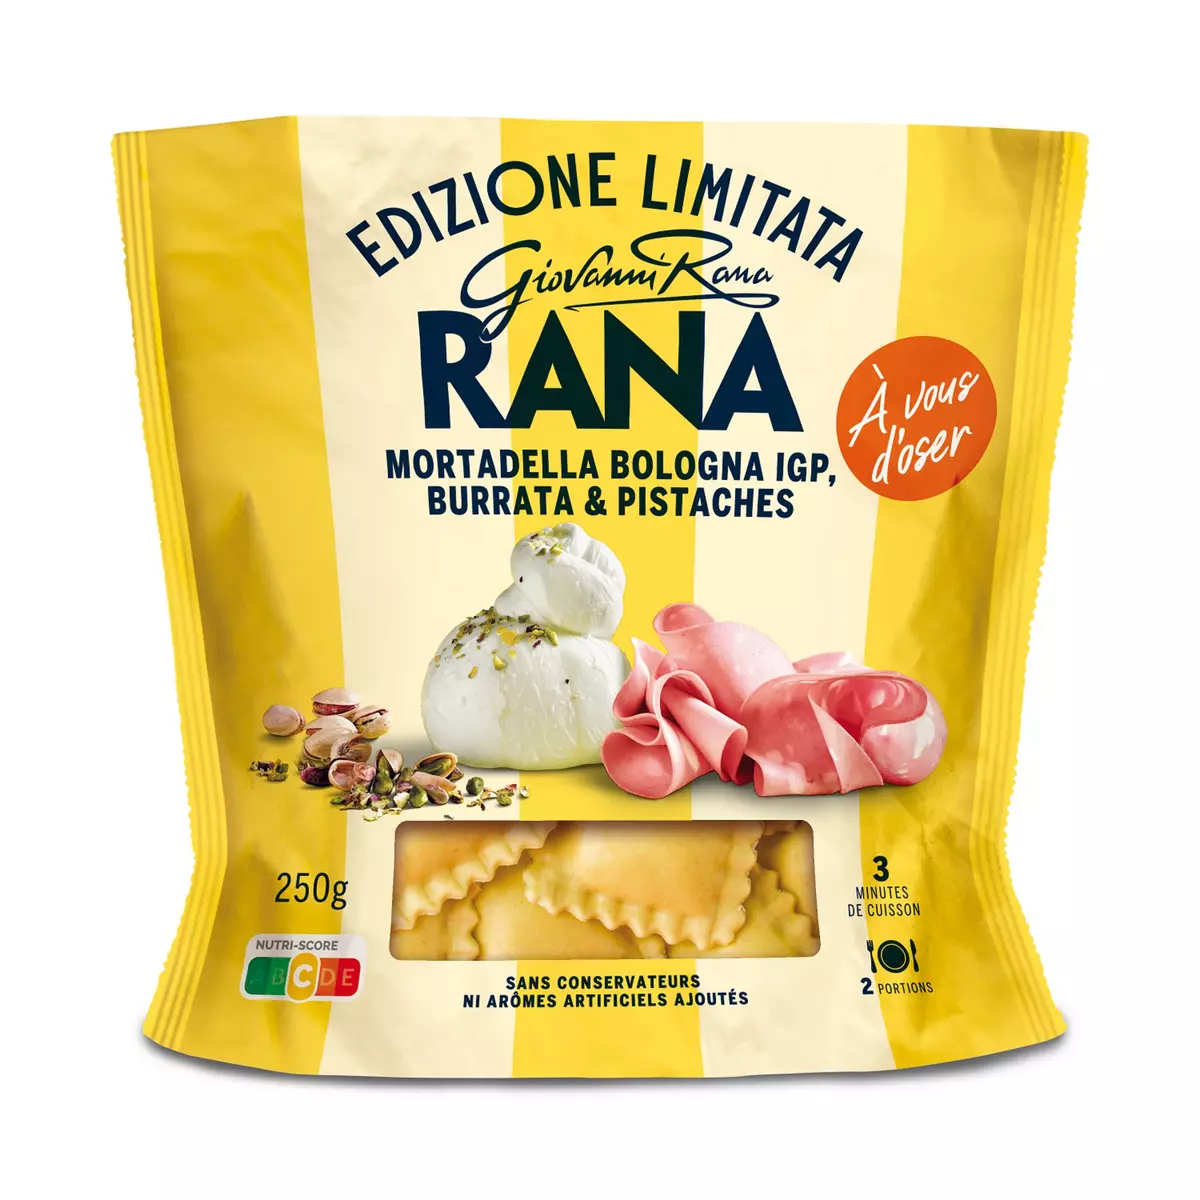 RANA Ravioli mortadella bologna IGP burrata et pistaches 2 portions 250g